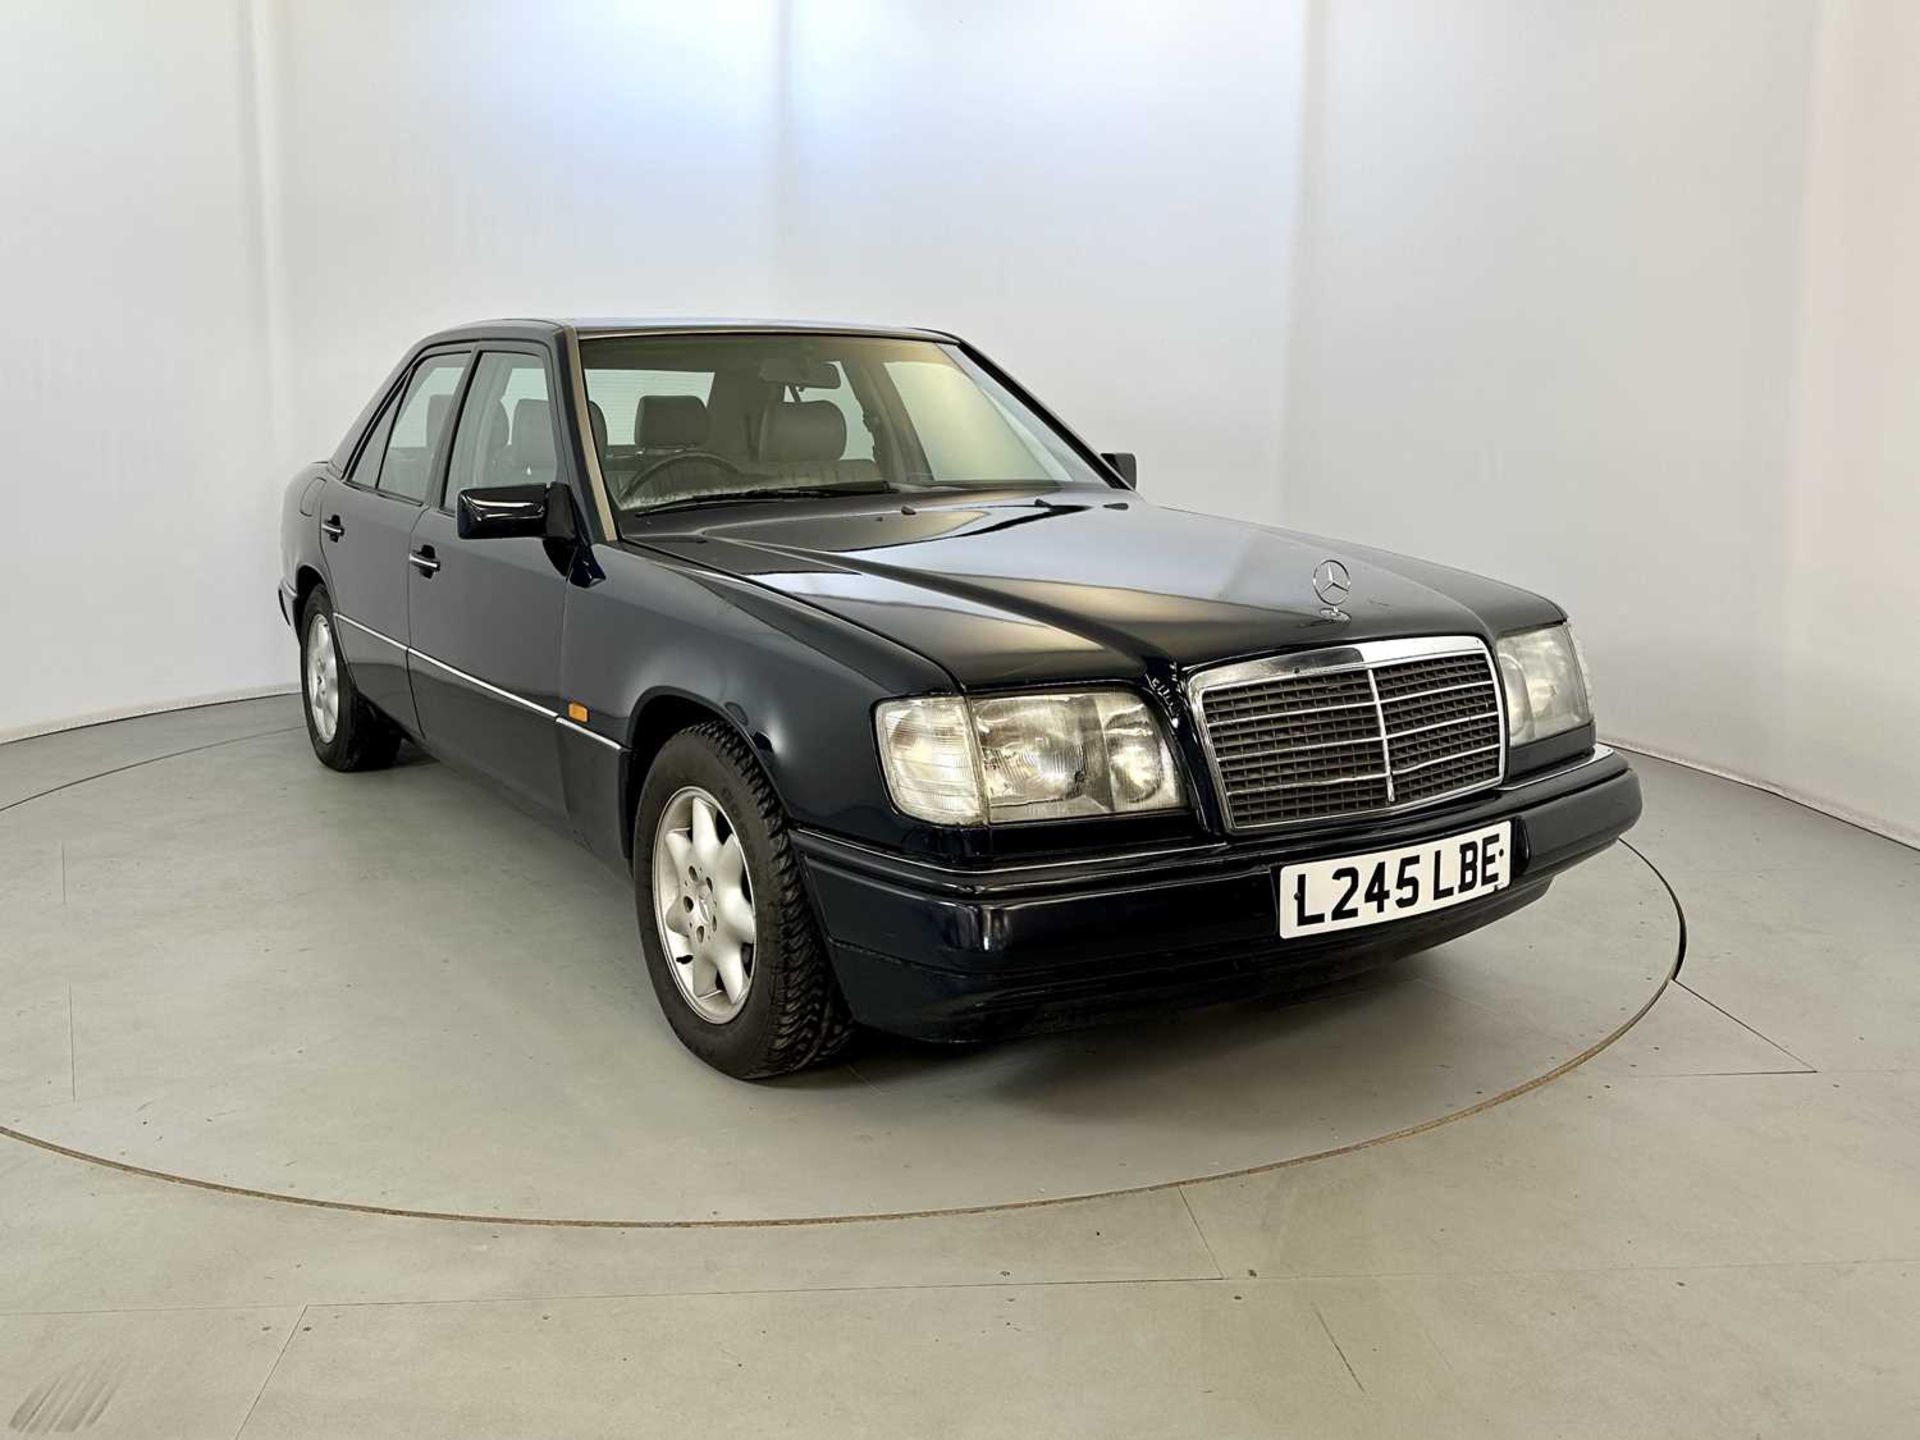 1993 Mercedes-Benz 200E - Image 2 of 33